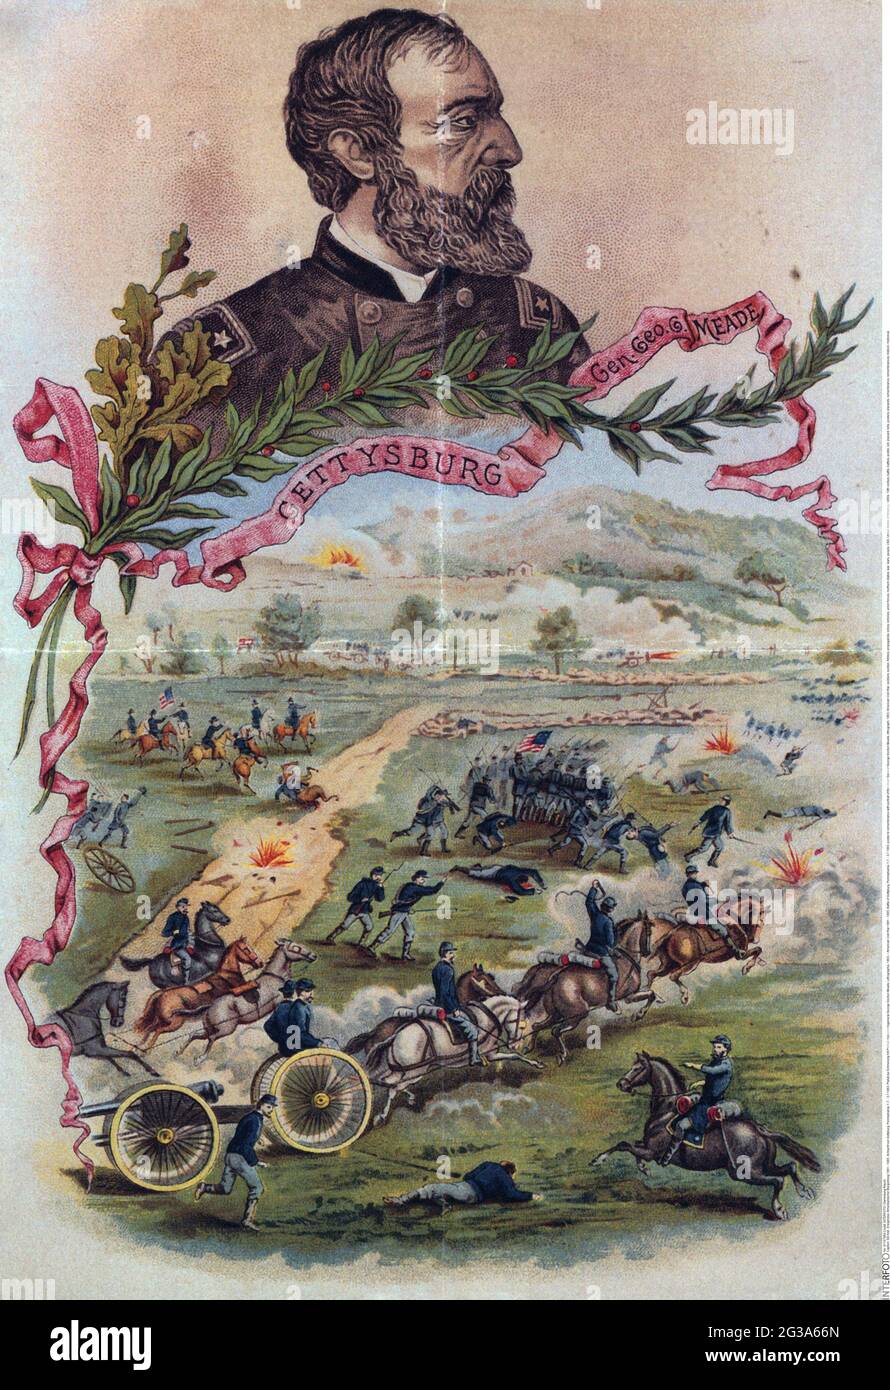 Guerre de Sécession 1861 - 1865, bataille de Gettyburg, Pennsylvanie, 1.7. - 3.7.1863, INFO-AUTORISATION-DROITS-SUPPLÉMENTAIRES-NON-DISPONIBLE Banque D'Images